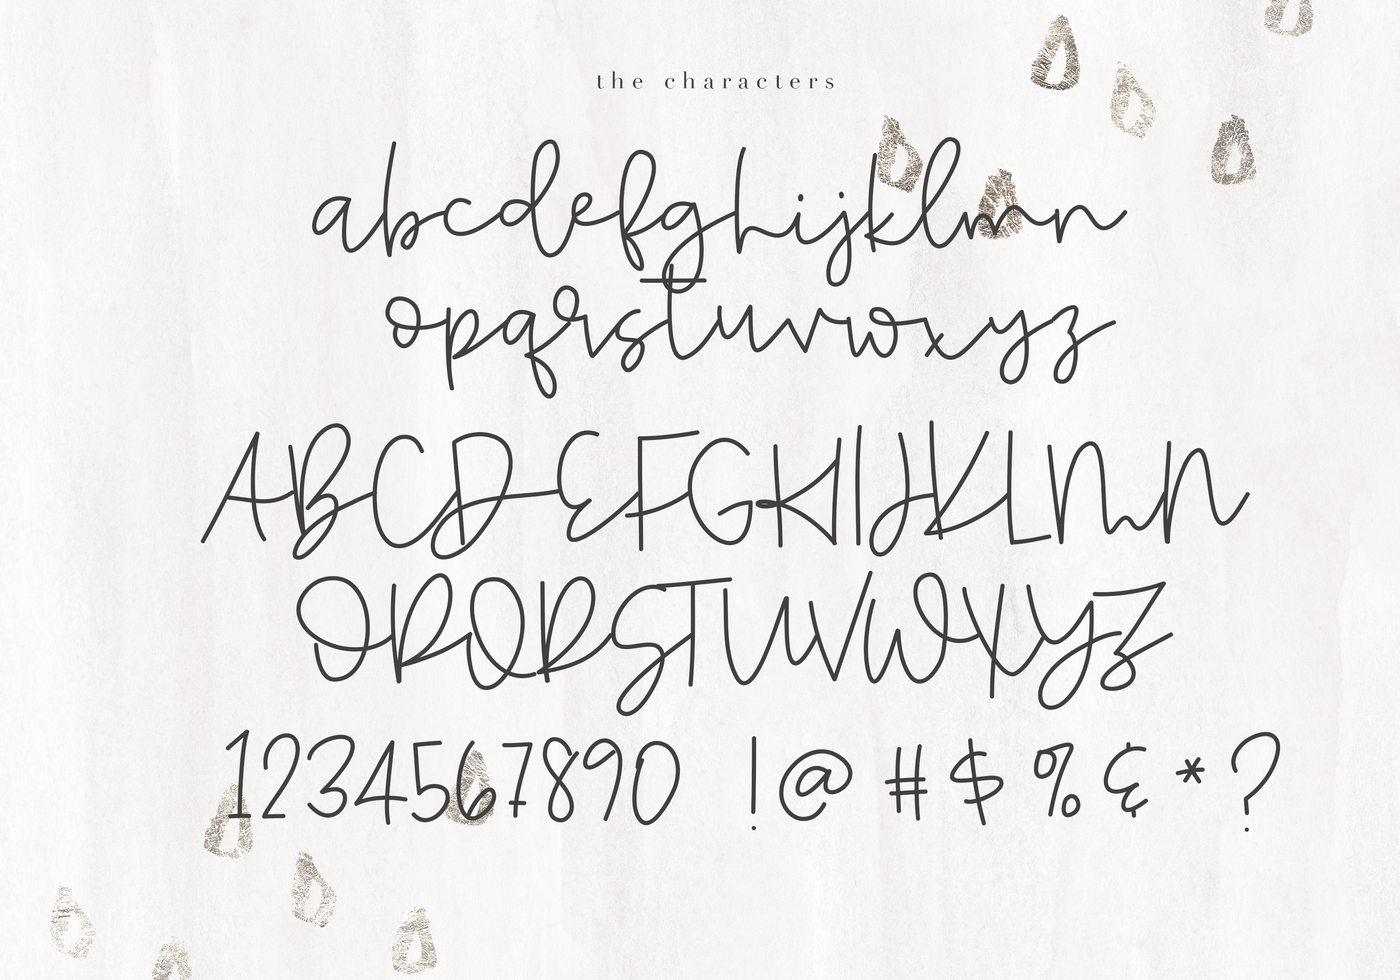 Asteroid A Handwritten Script Font By Ka Designs Thehungryjpeg Com